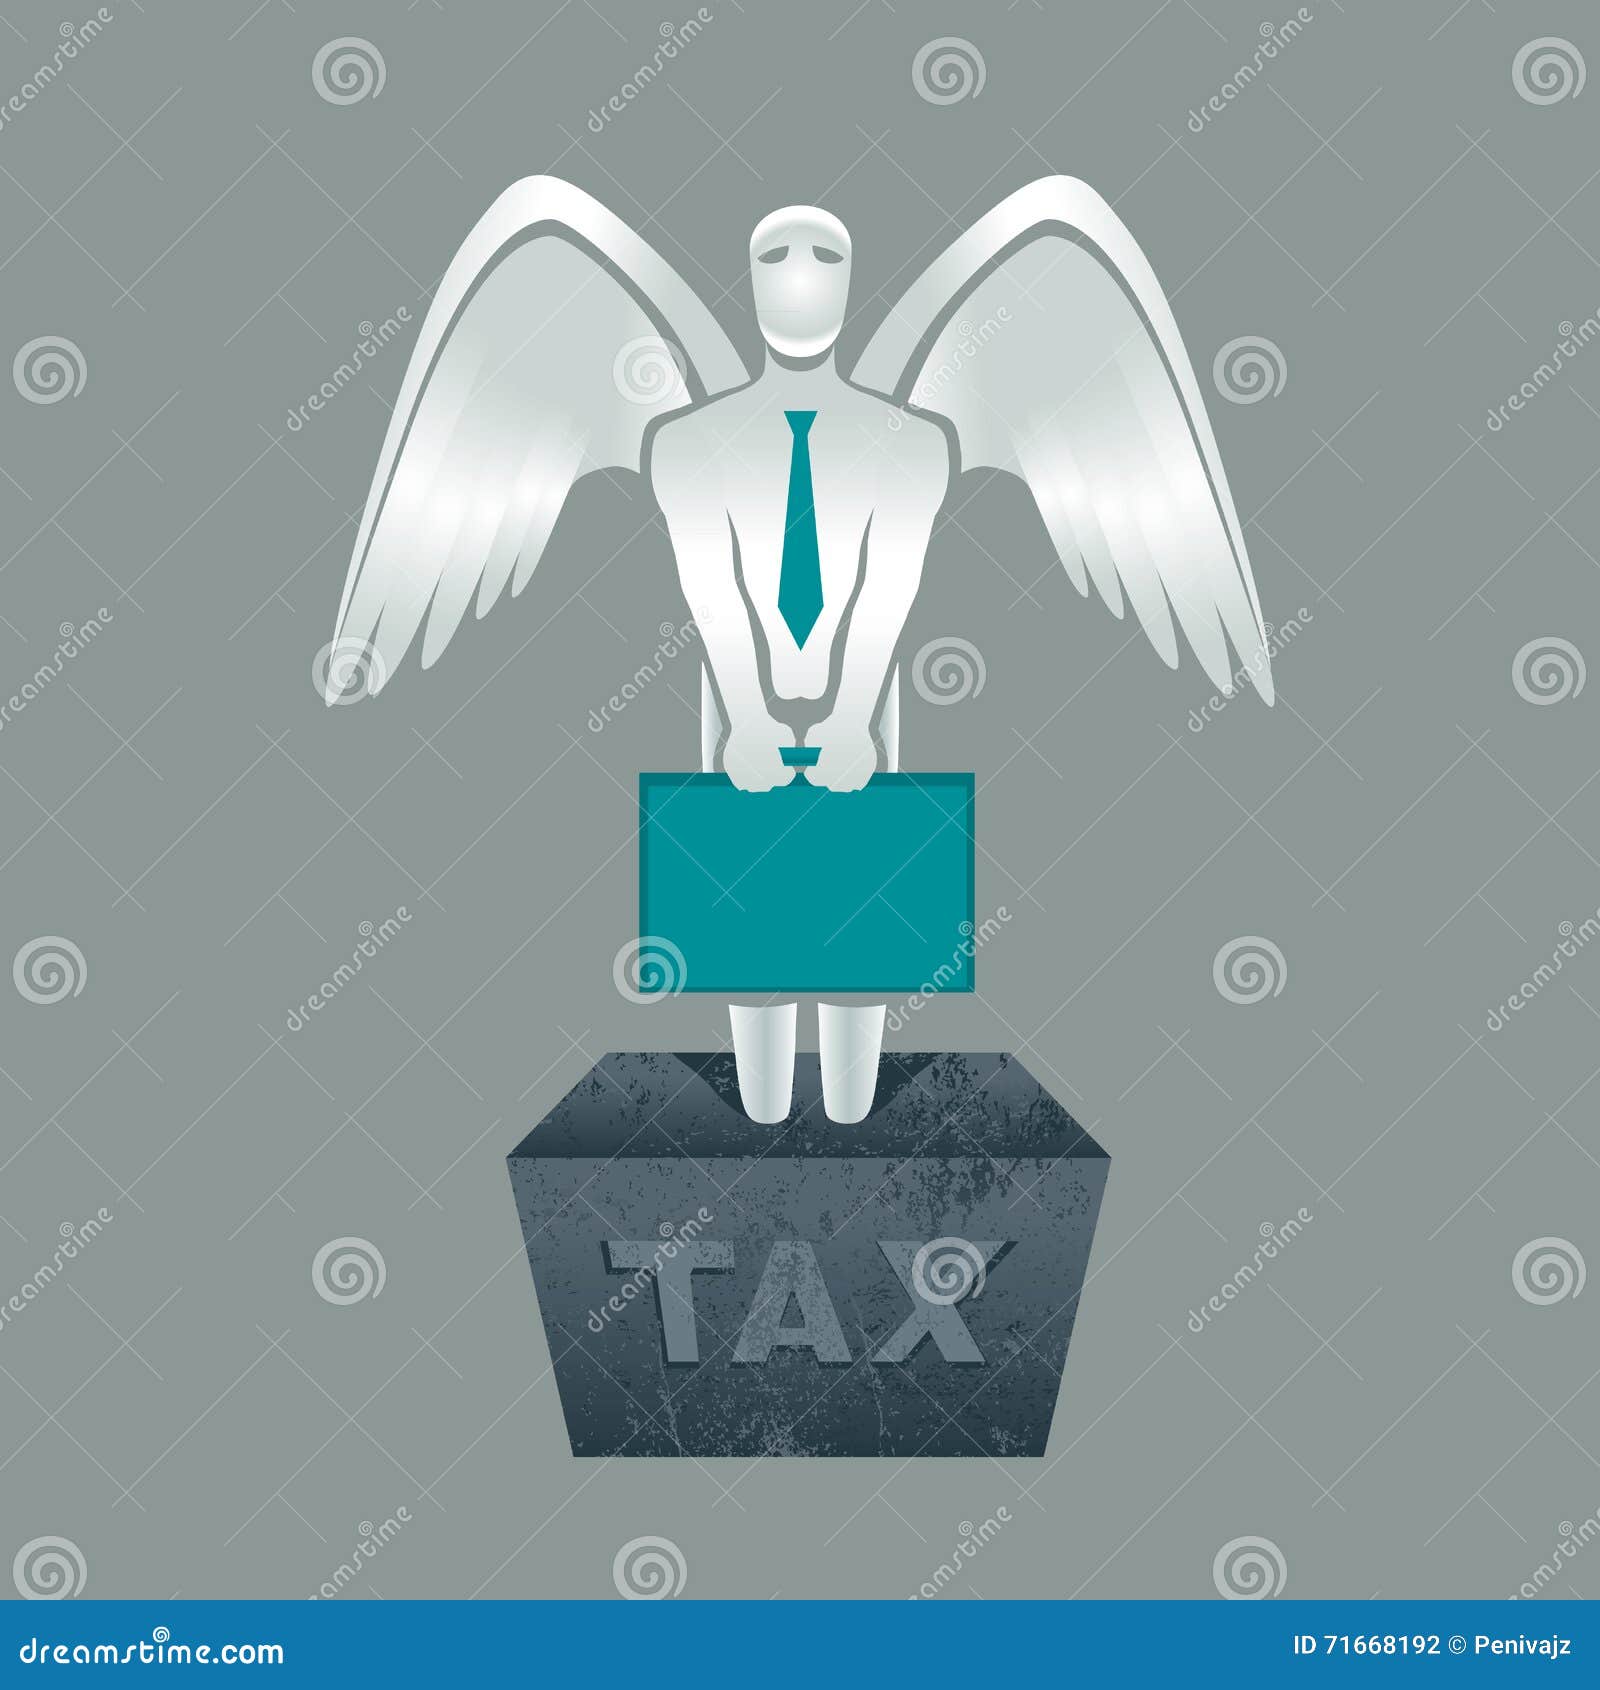 tax obligation